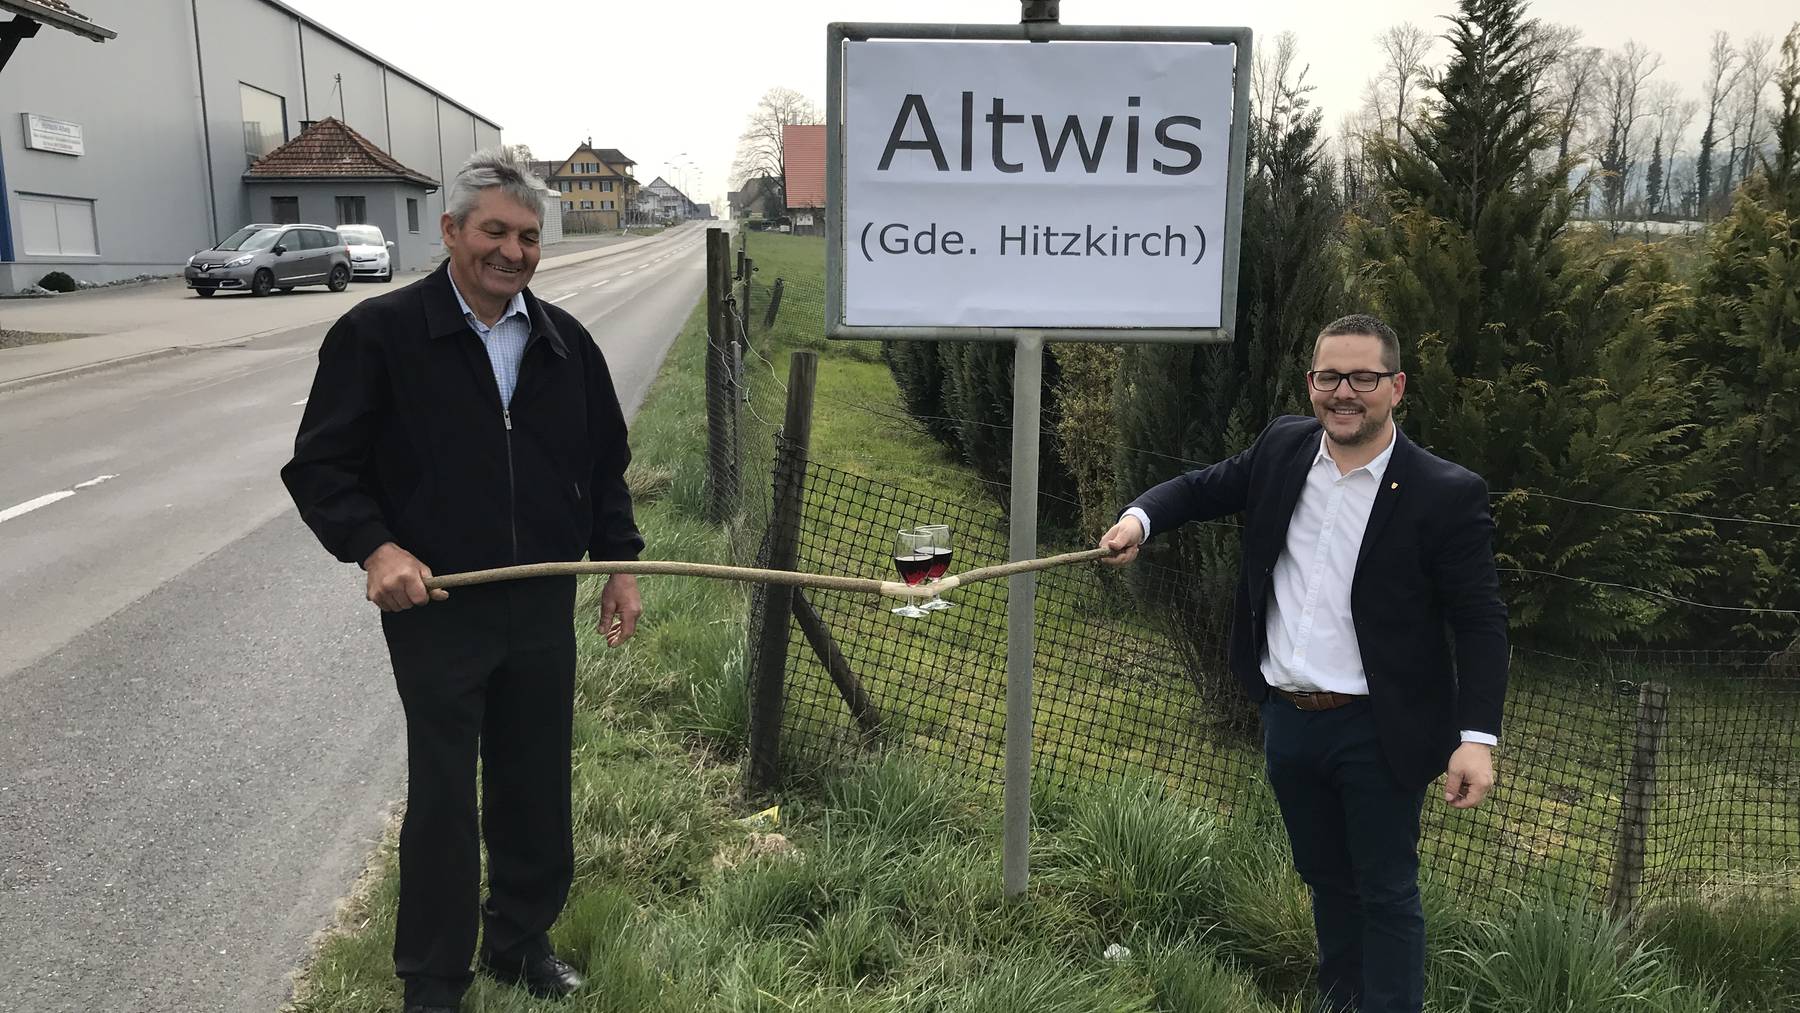 Hans Elmiger, Gemeindepräsident Altwis und David Affentranger, Gemeindepräsident Hitzkirch